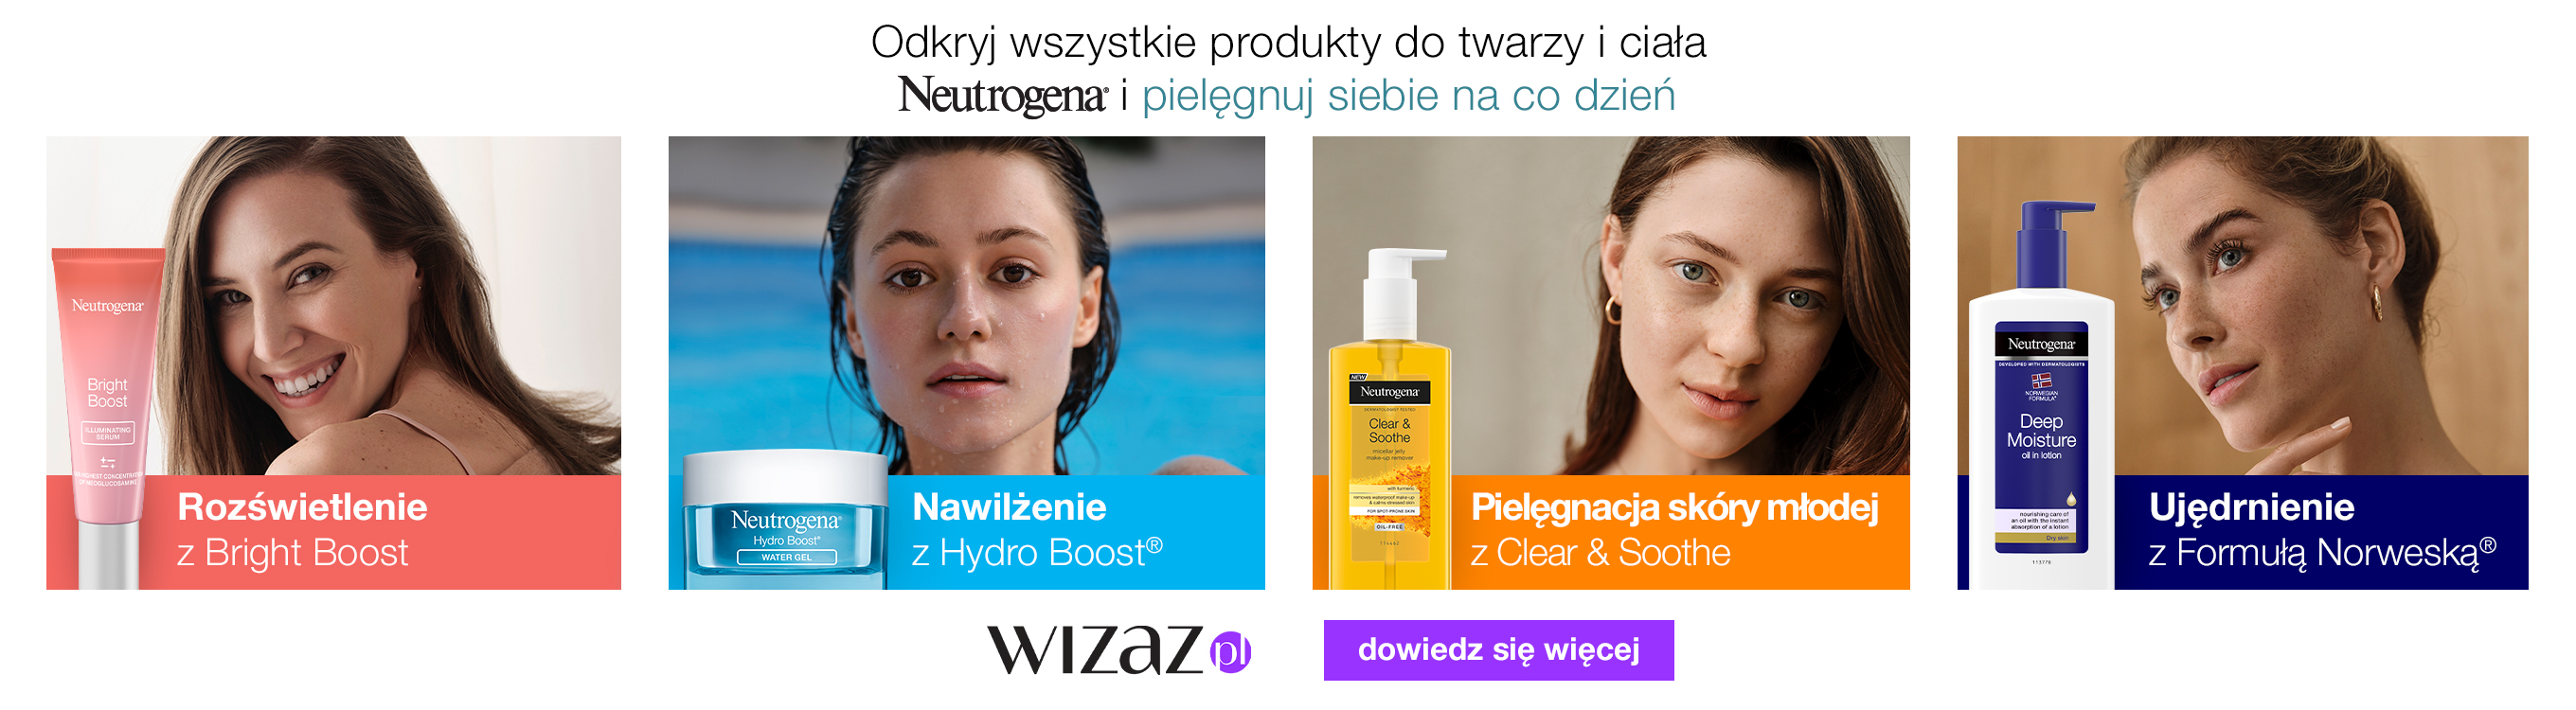 Neutrogena wizaz.pl dowiedz się więcej